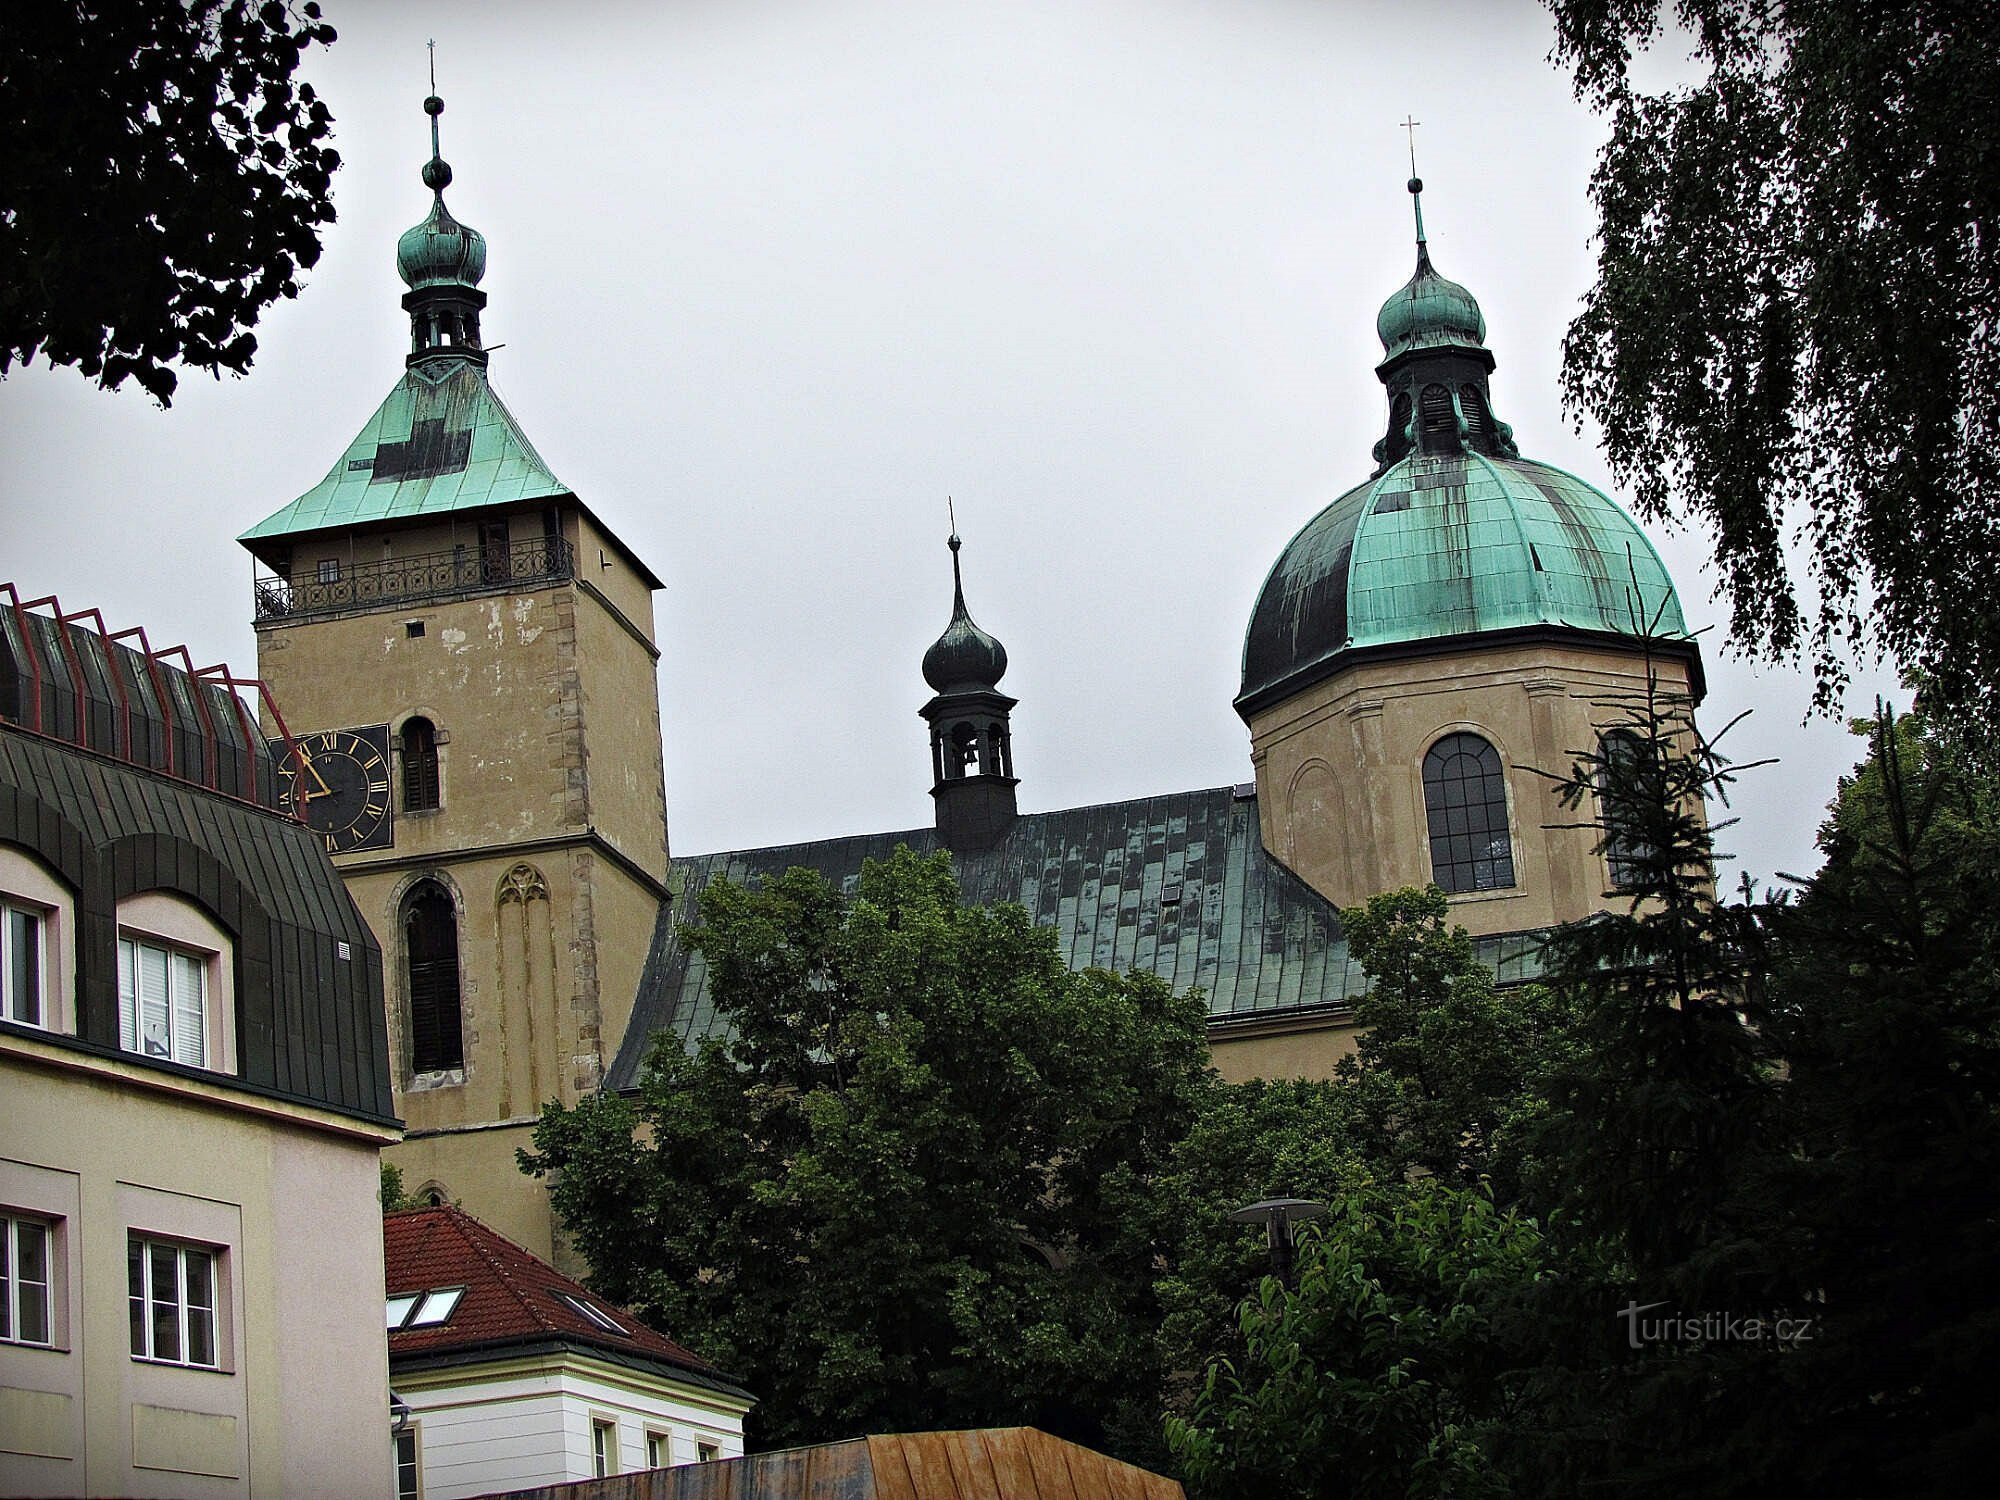 Katedra Wniebowzięcia Najświętszej Marii Panny w Havlíčkobrodzie